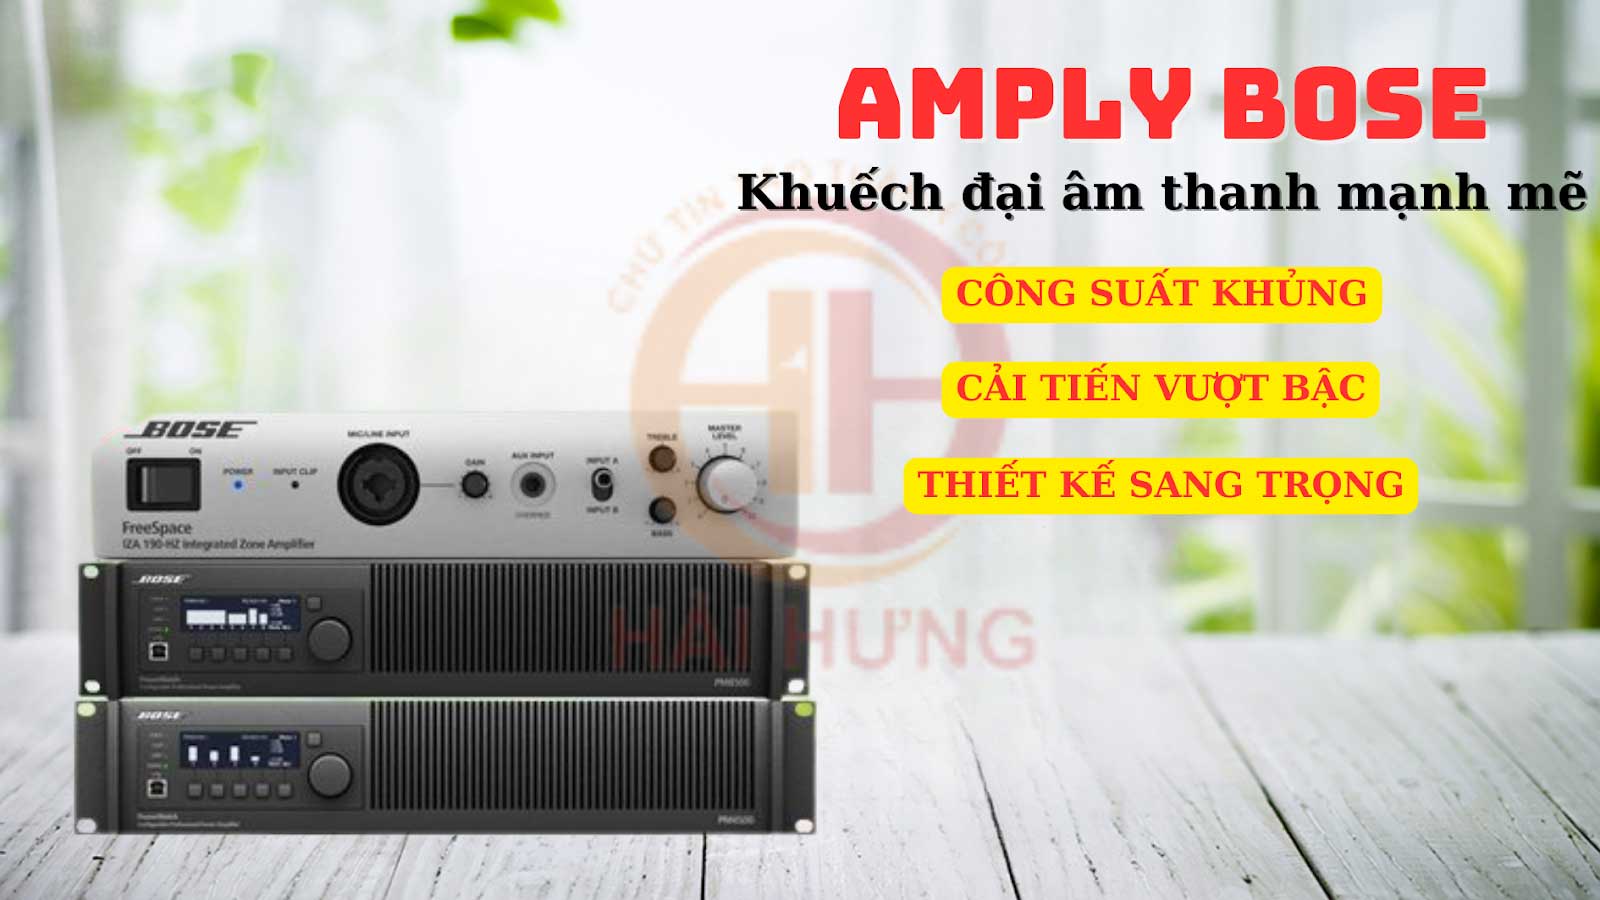 Amply Bose với nhiều ưu điểm giúp mang lại chất lượng âm thanh cao